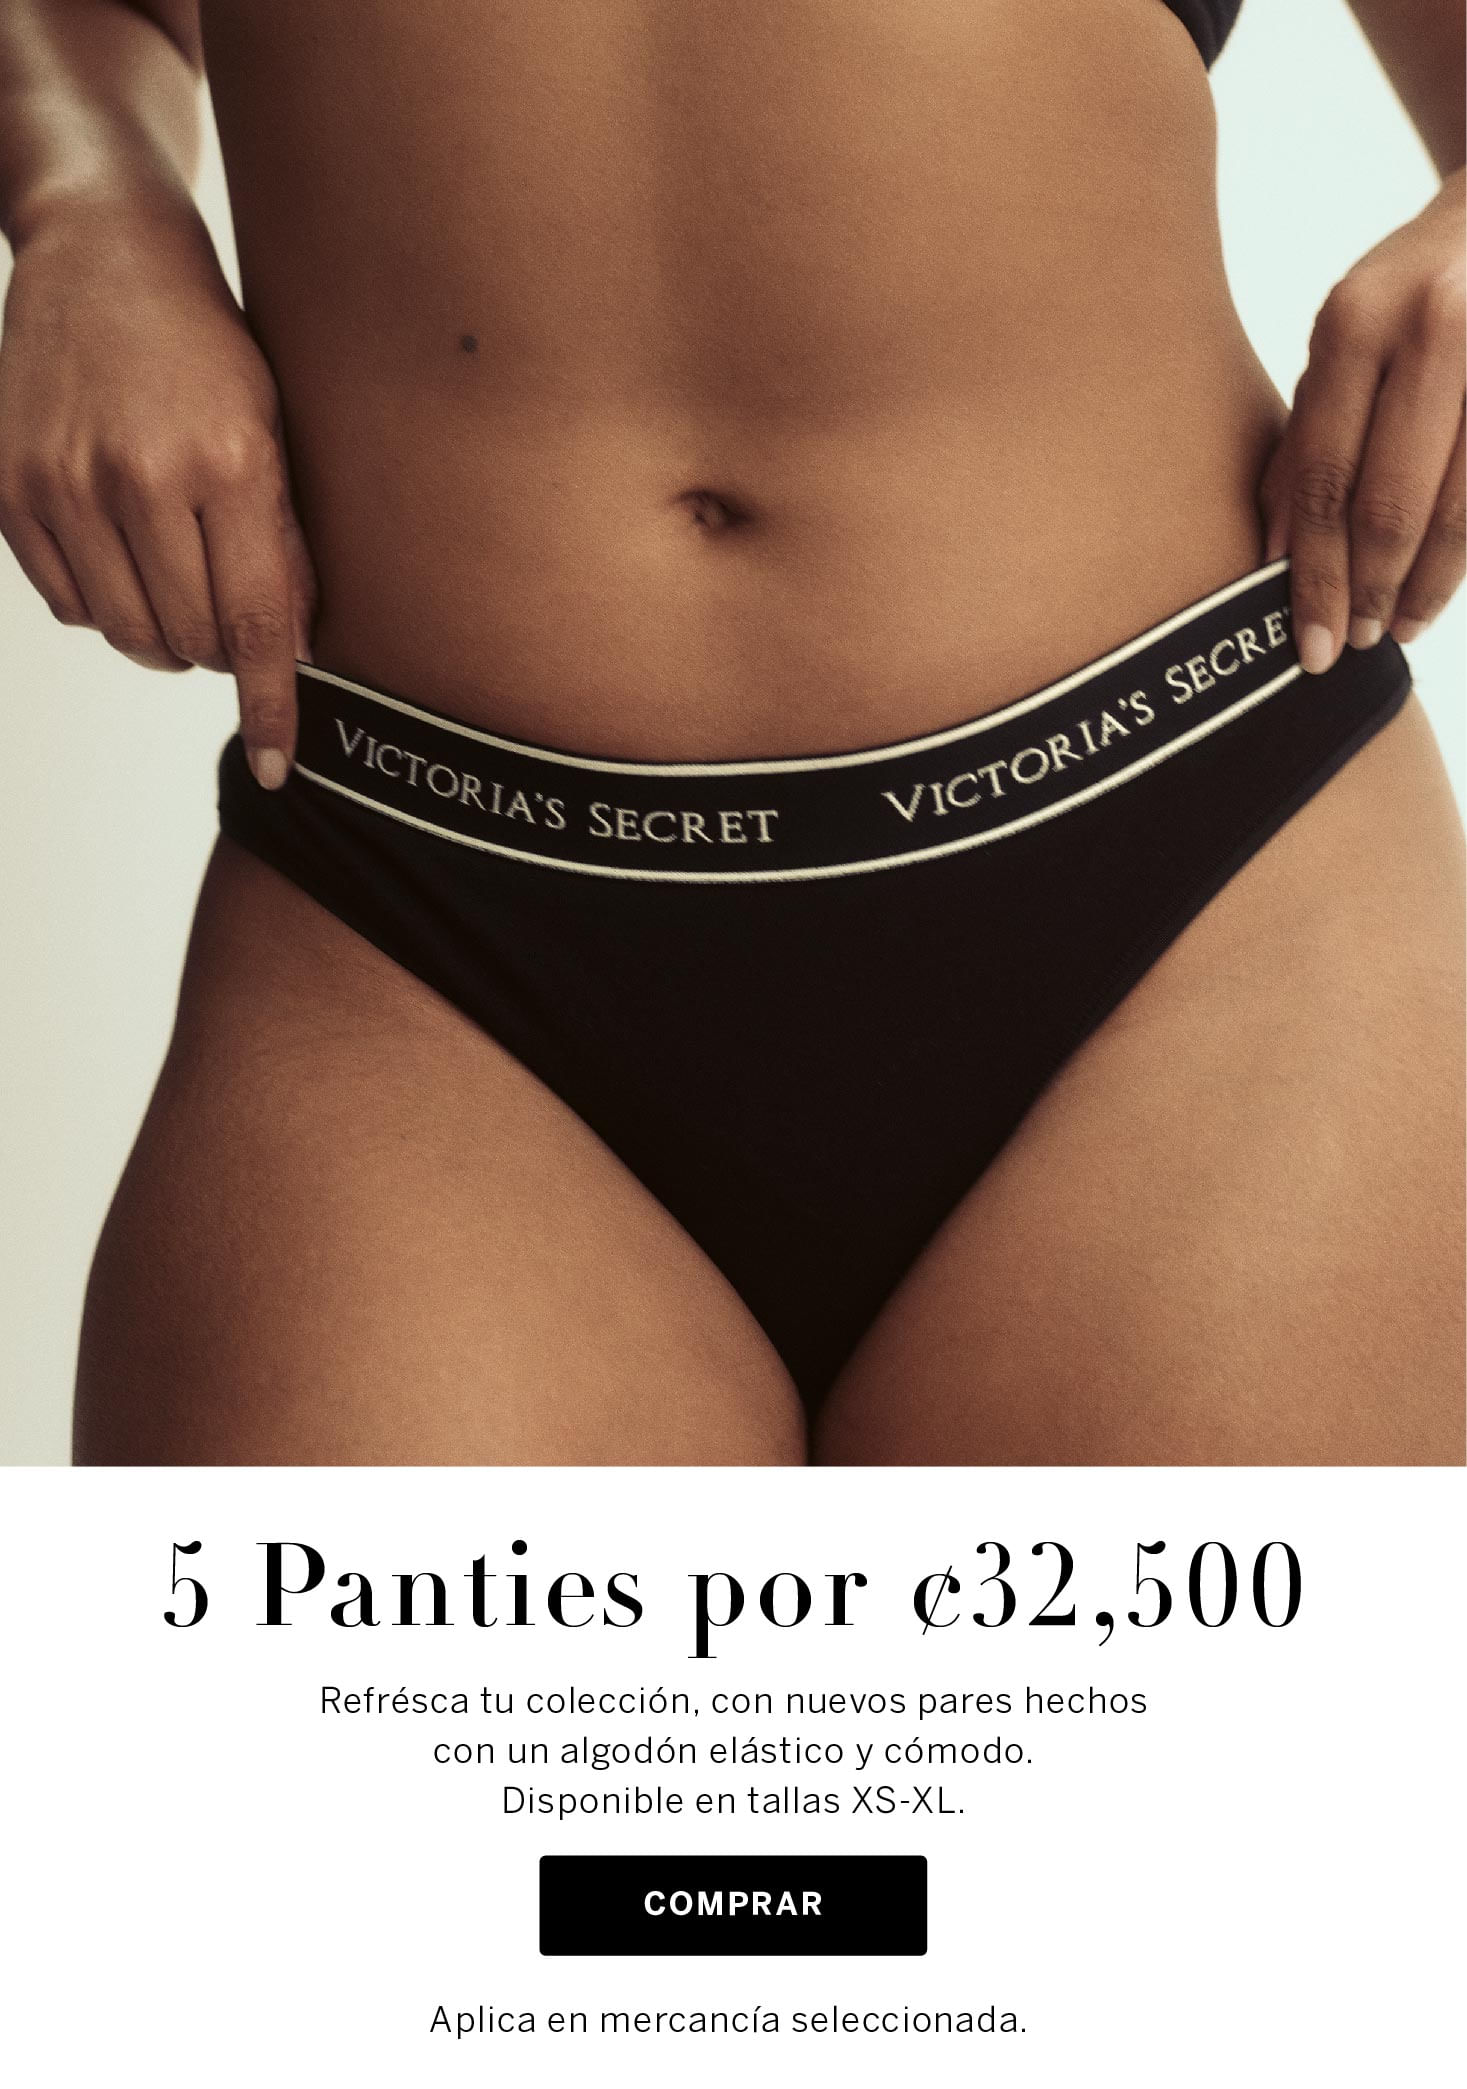 Victoria's Secret Costa Rica - Tienda en Línea: Fragancias, Accesorios y  Panties